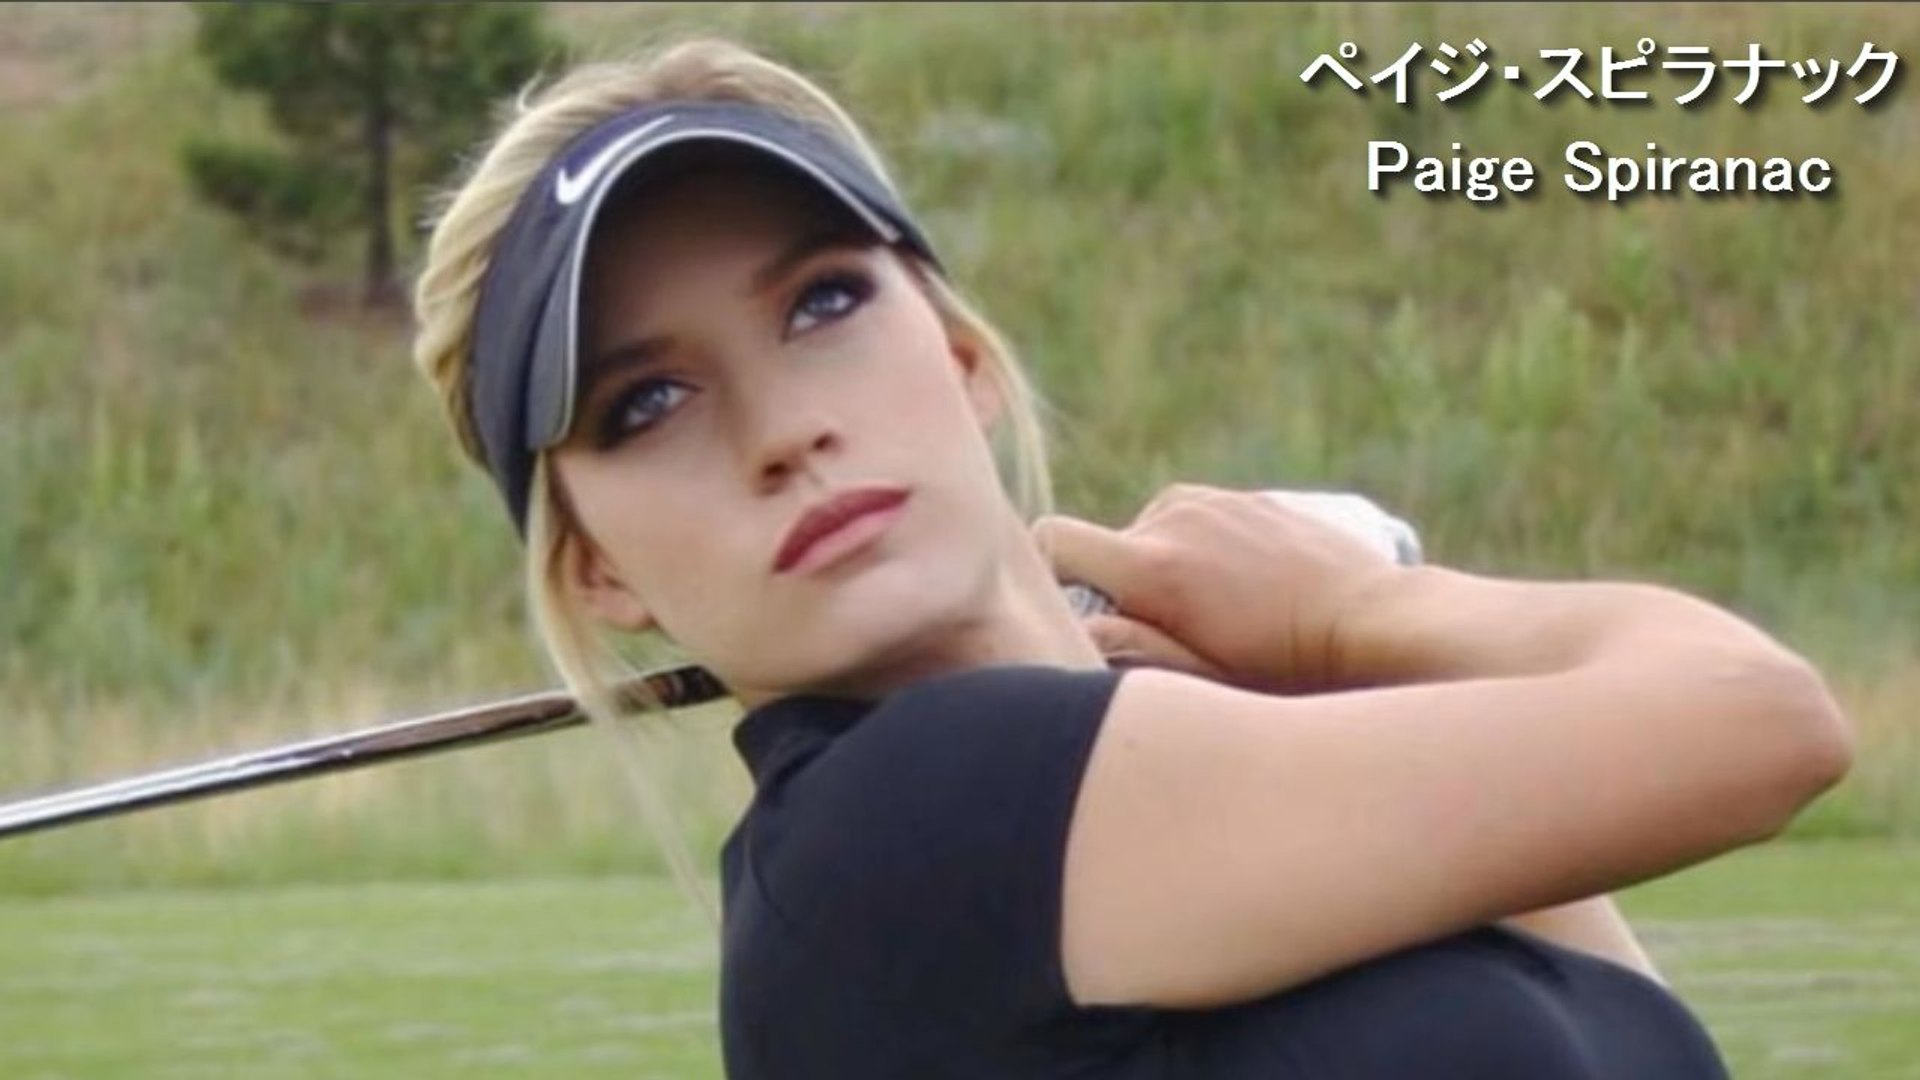 ペイジスピラナック Paige Spiranac Beautifull Golf Swing 動画 Dailymotion